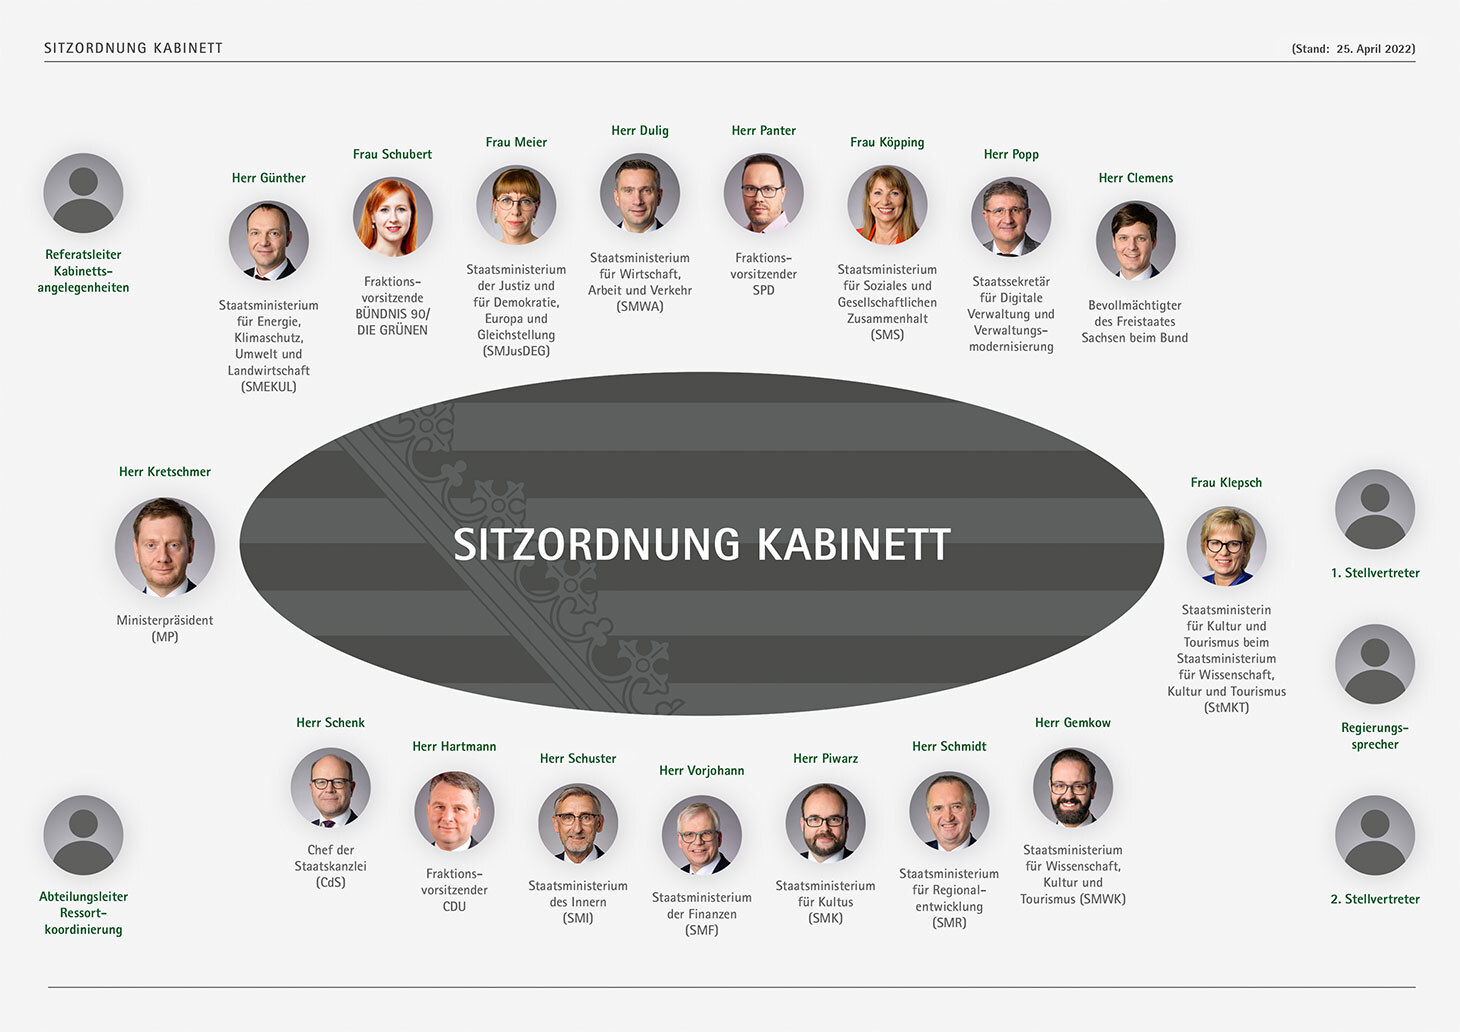 Die Sitzordnung des Kabinetts in der Sächsischen Staatskanzlei mit Fotos der Staatsministerinnen und Staatsminister